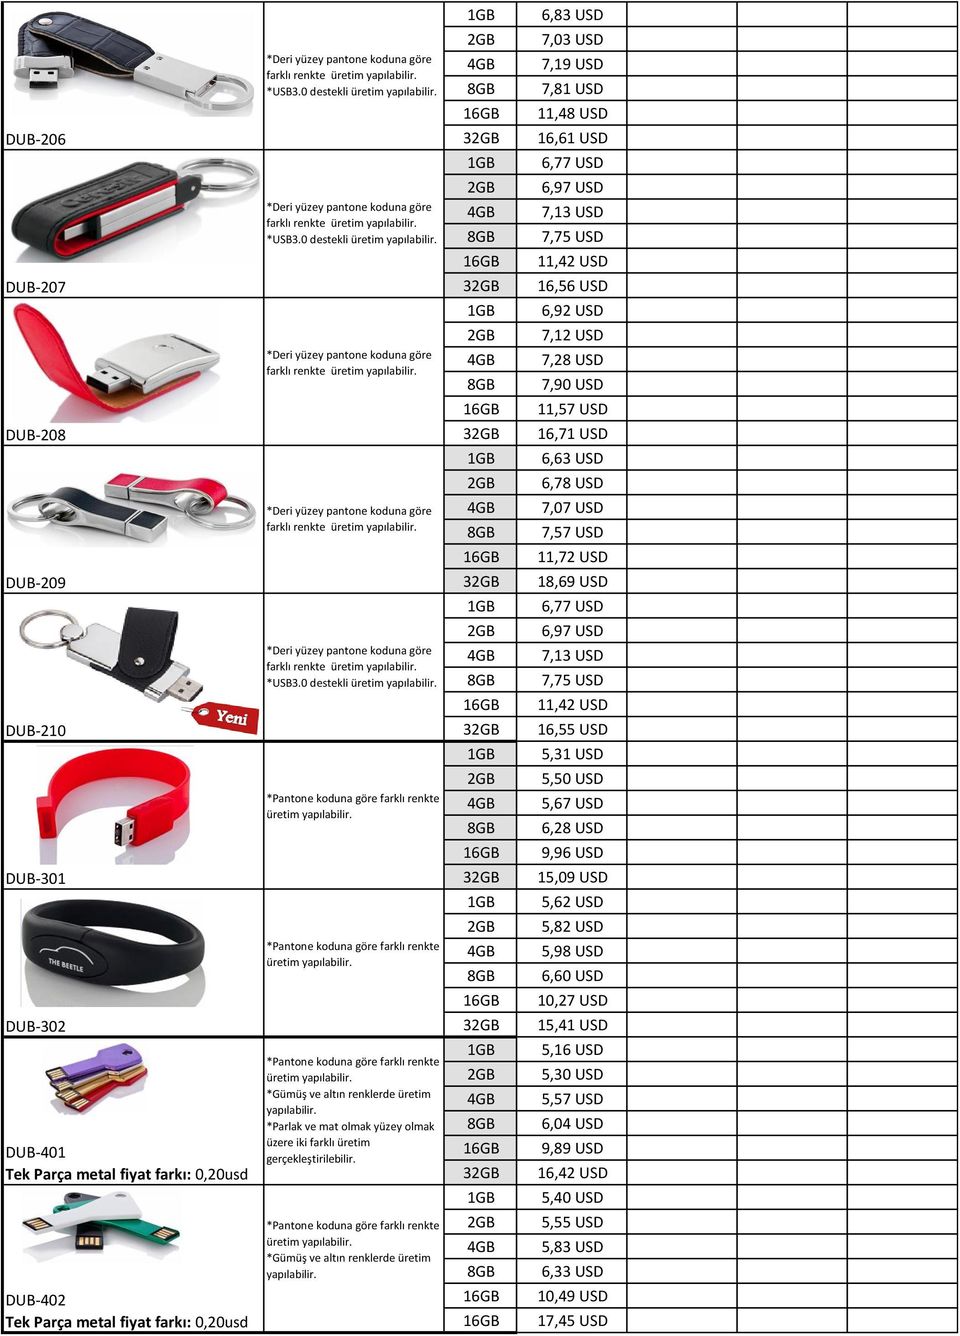 11,72 USD DUB-209 3 18,69 USD 6,77 USD farklı renkte *USB3.